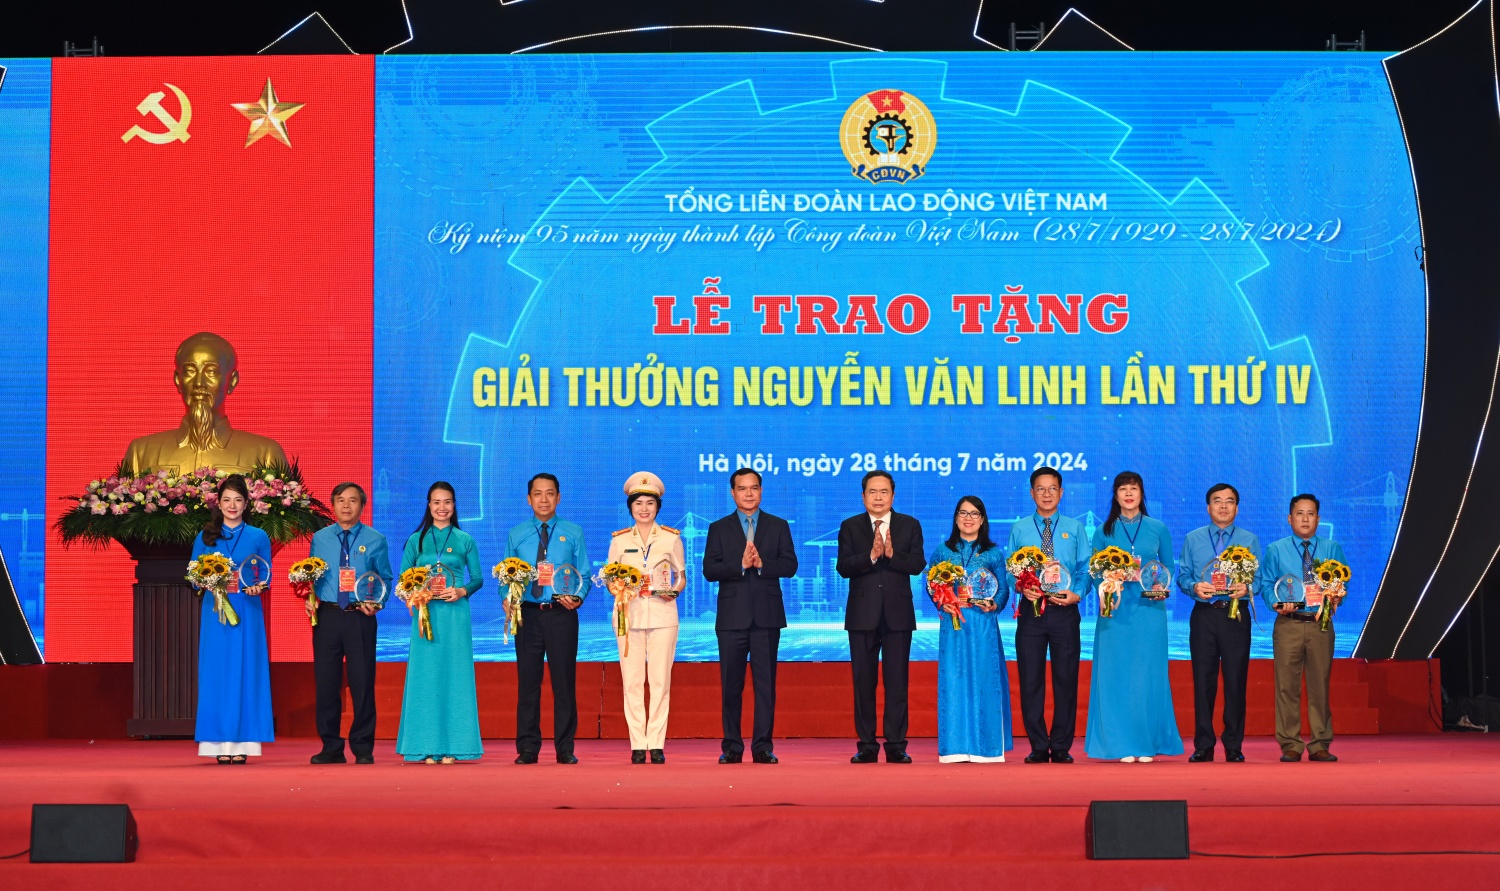 Chủ tịch Quốc hội Trần Thanh Mẫn và Chủ tịch Tổng Liên đoàn Lao động Việt Nam Nguyễn Đình Khang trao tặng “Giải thưởng Nguyễn Văn Linh” cho 10 gương mặt cán bộ công đoàn tiêu biểu.